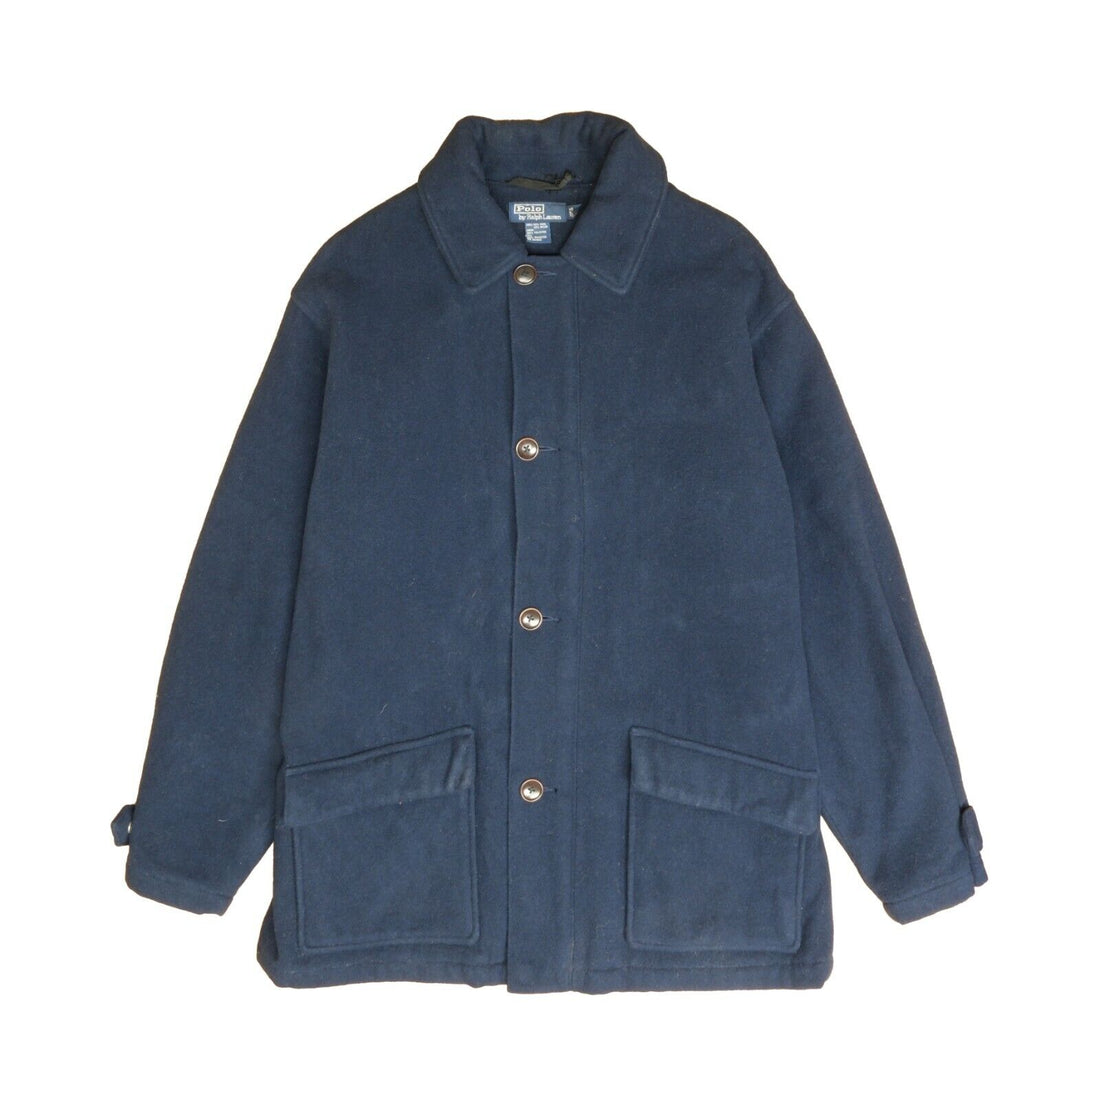 Vintage Polo Ralph Lauren Wool Coat Jacket Size Large Blue